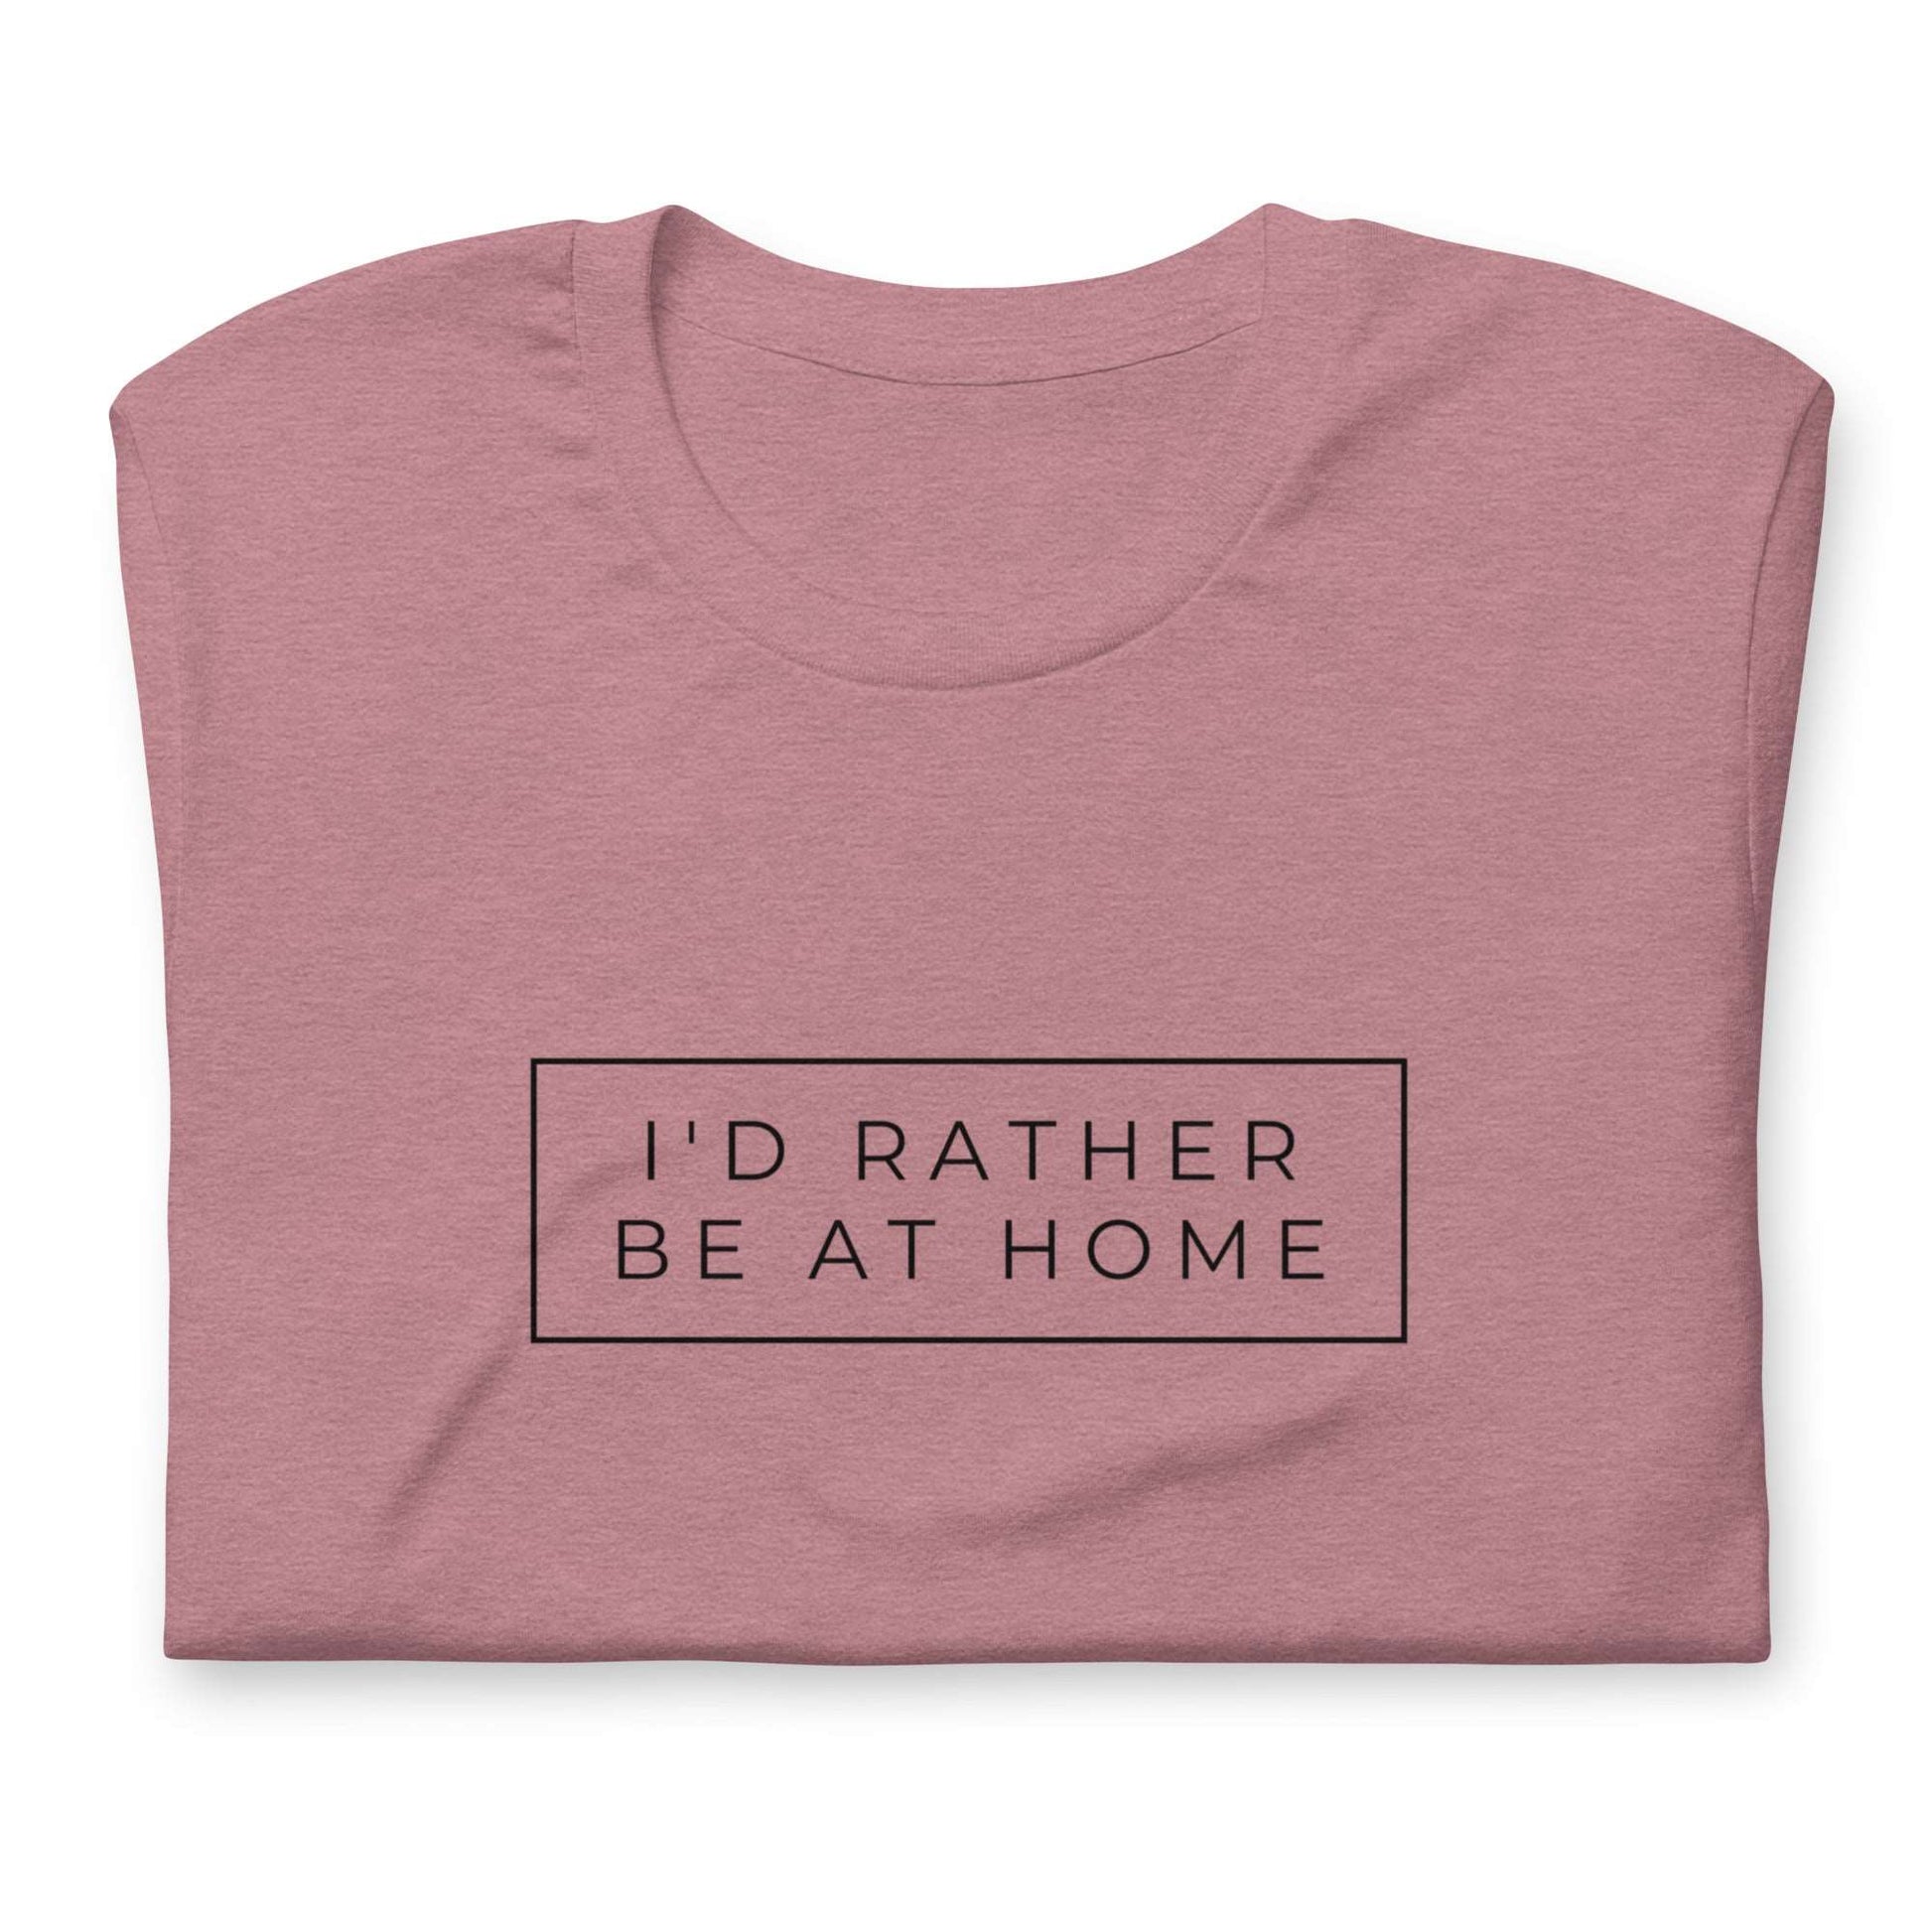 Homebody Graphic t-shirt